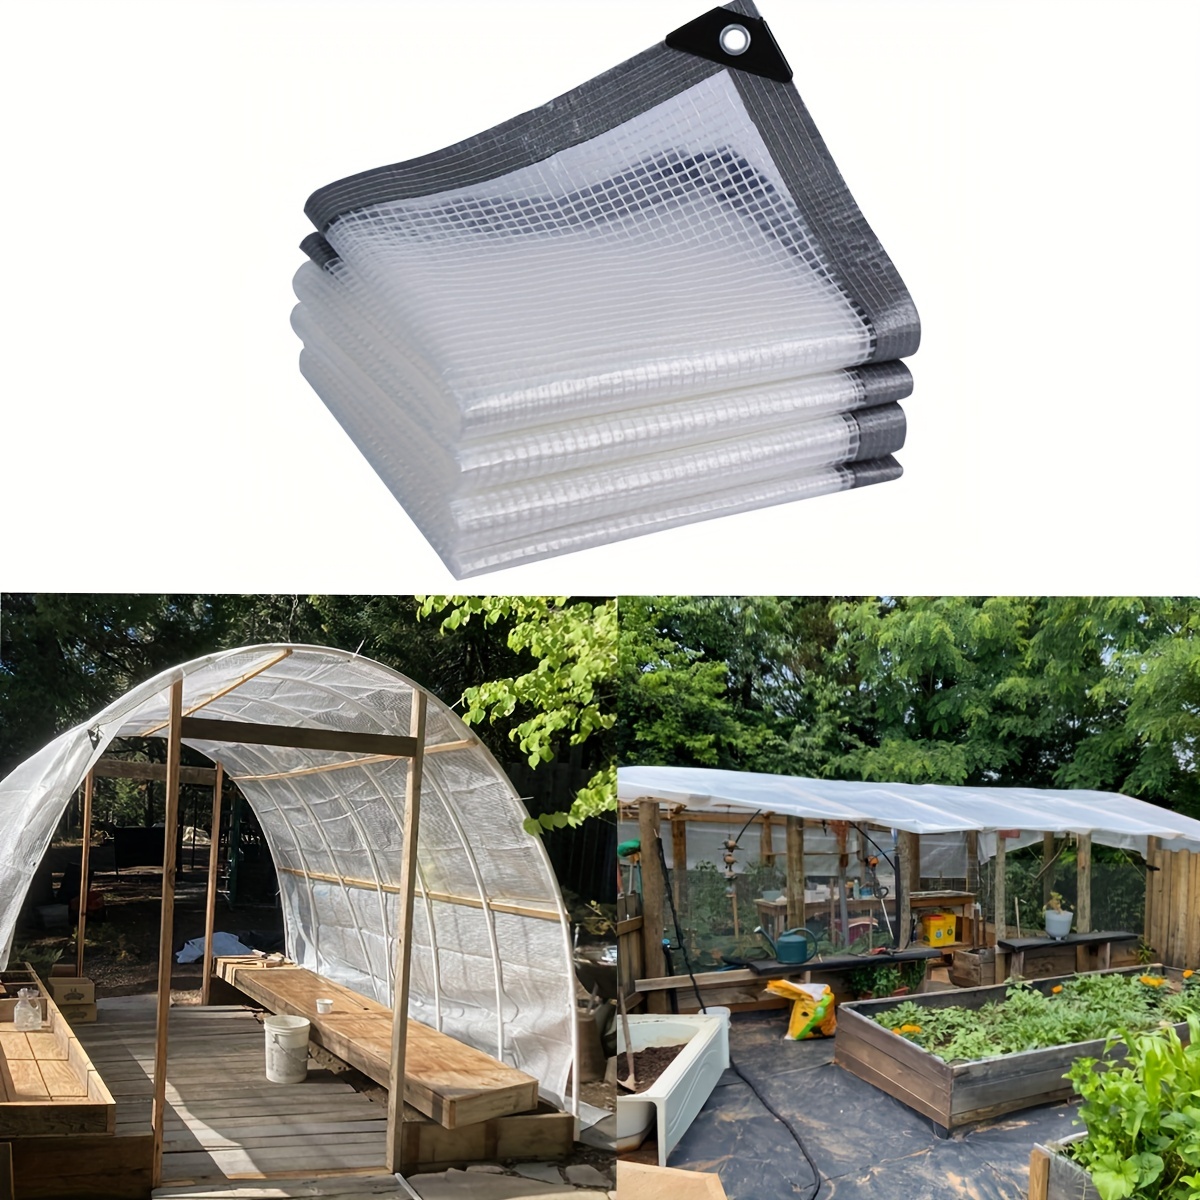 Cubierta para plantas U/D, lona de plástico transparente impermeable de  PVC, varios tamaños de lona transparente a prueba de lluvia con ojales,  toldo